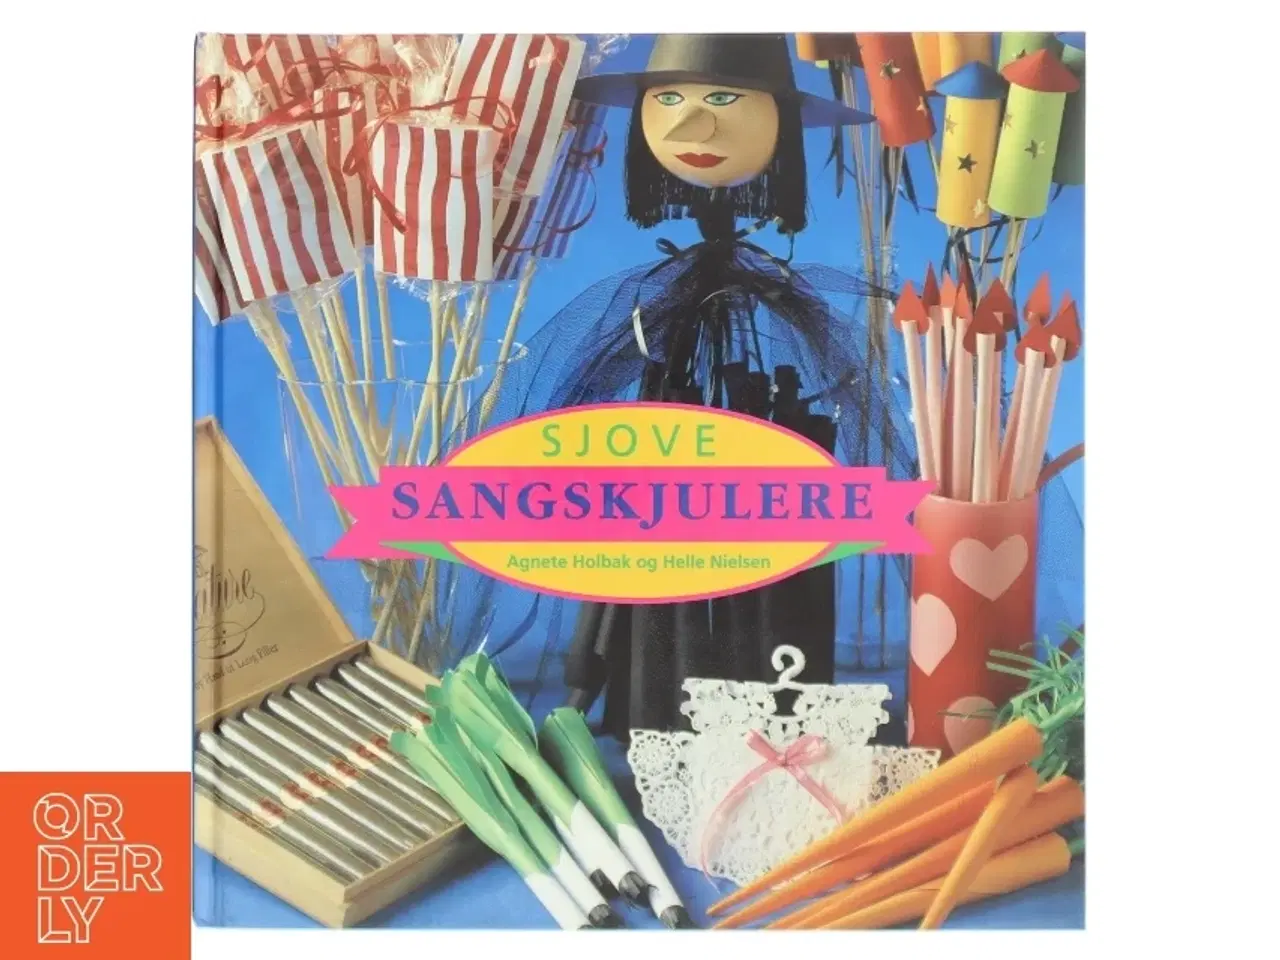 Billede 1 - 'Sjove sangskjulere' af Agnete Holbæk og Helle Nielsen (bog) fra Egmont